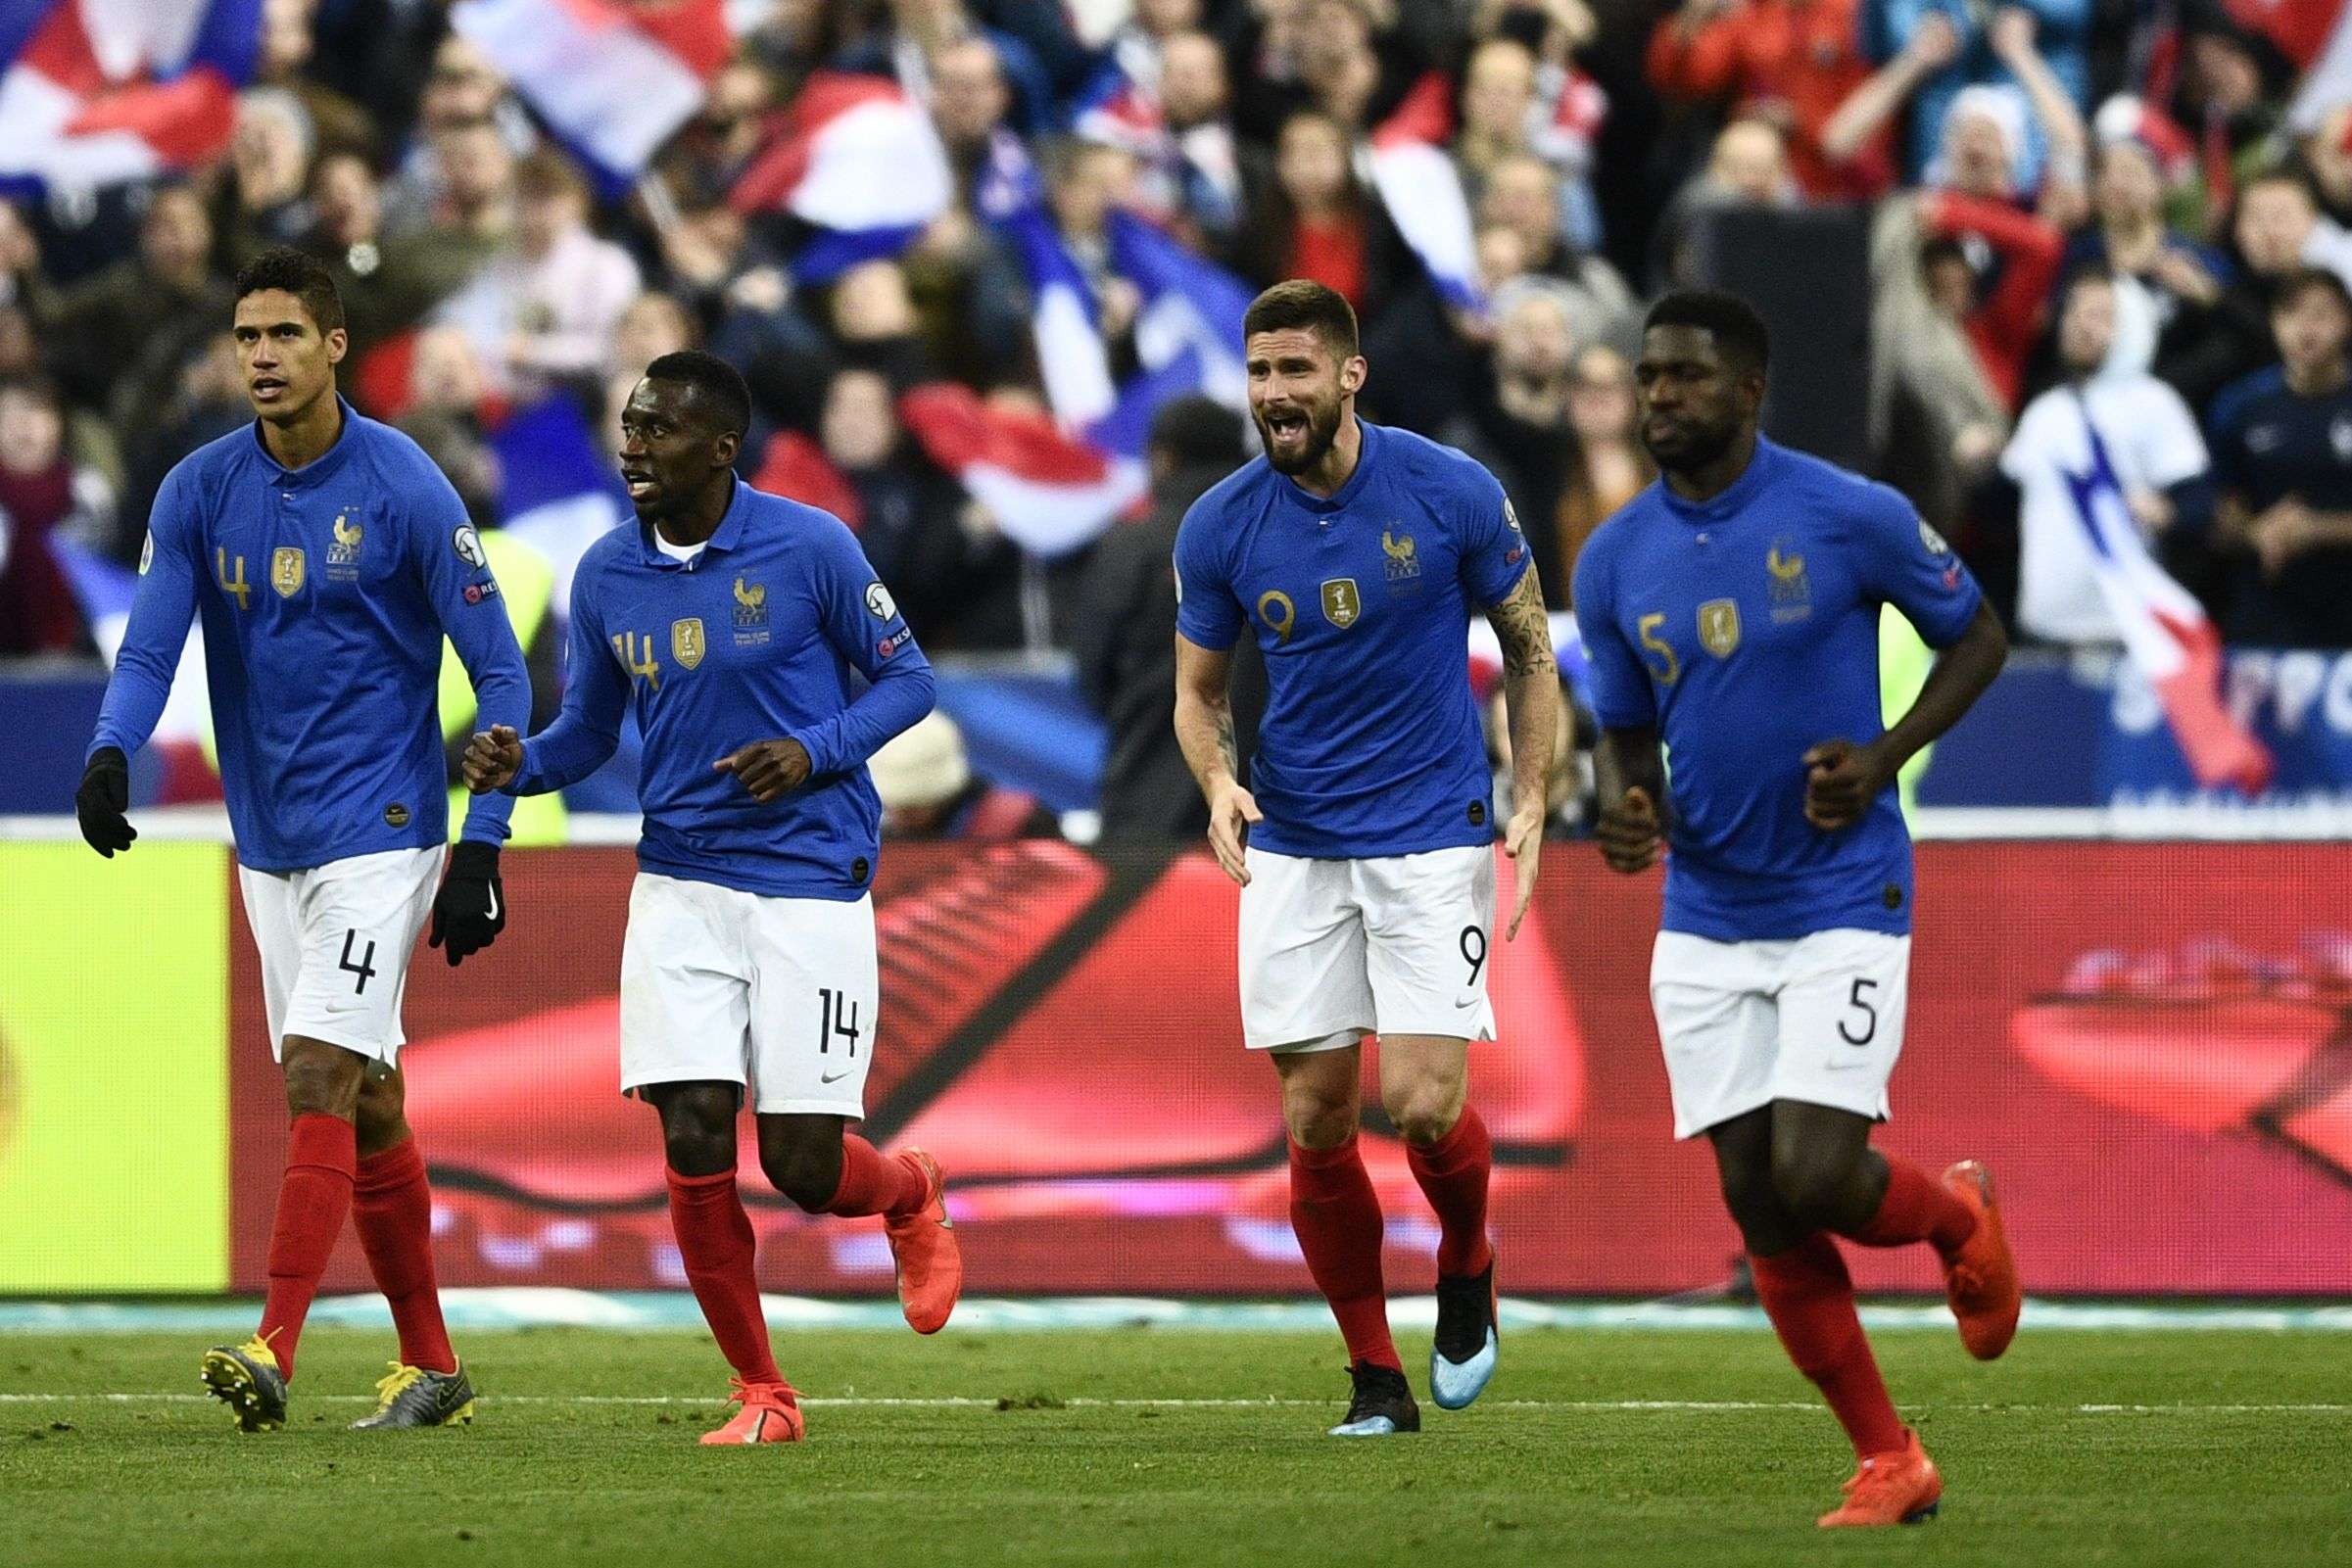 فرنسا تثبت وجود وفرة بالبدائل بعد الفوز على ألبانيا وأندورا